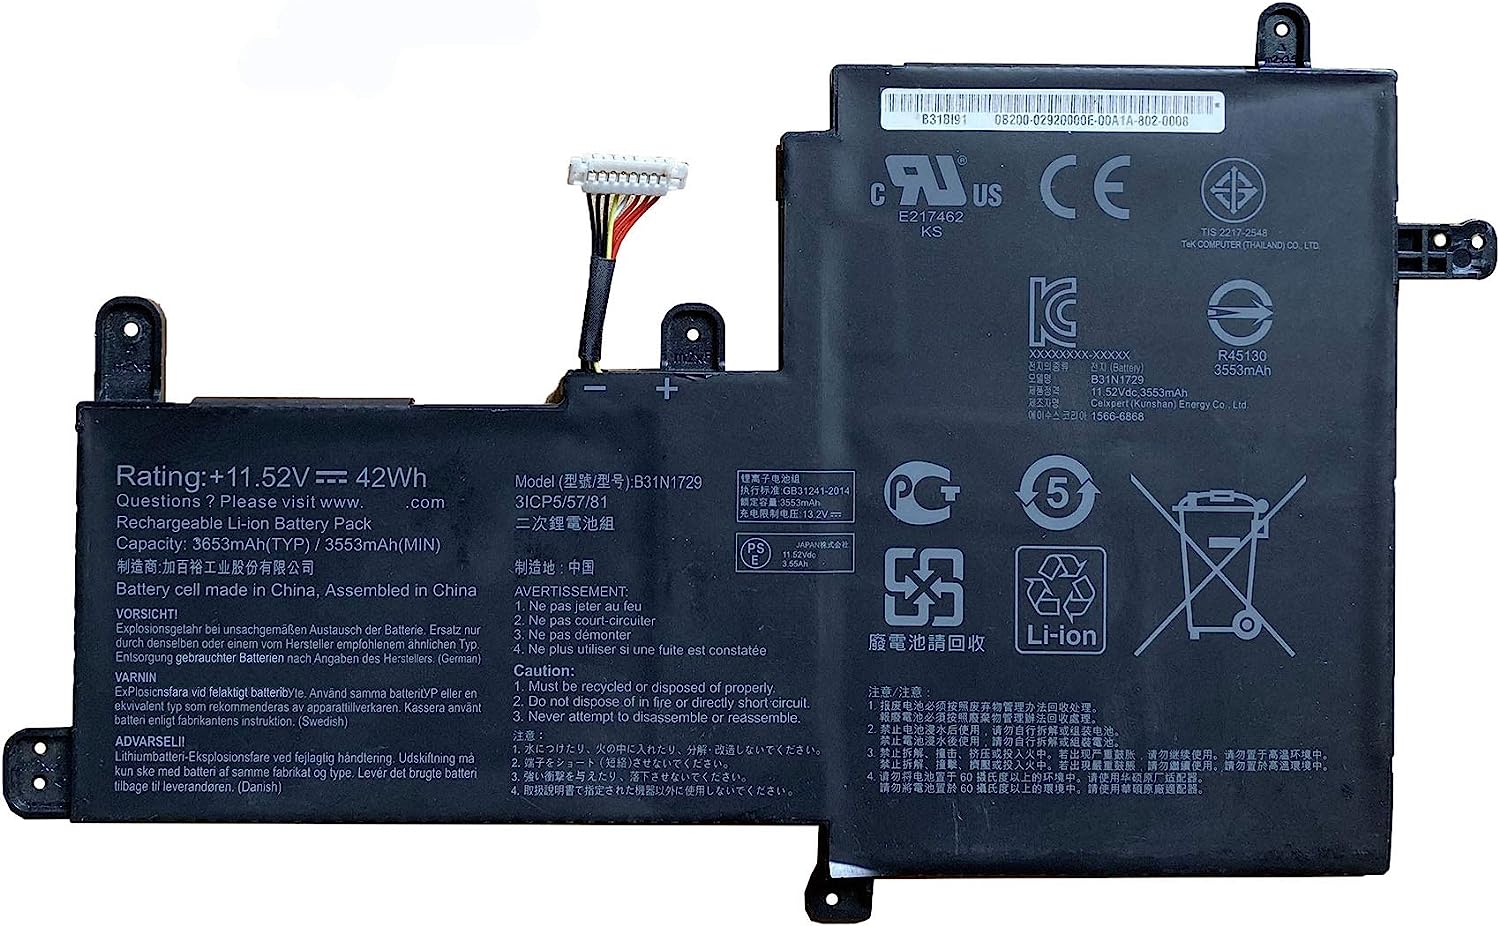 Asus B31N1729 Battery for VivoBook S15 S530 S530UA S530UN S530UN-BQ097T X530FN X530FN-1A X530FN-1B X530FN-1D X530FN-1E X530FN-1G X530FN-2F 0B200-02920000 Series (11.52V 42Wh/3653mAh)